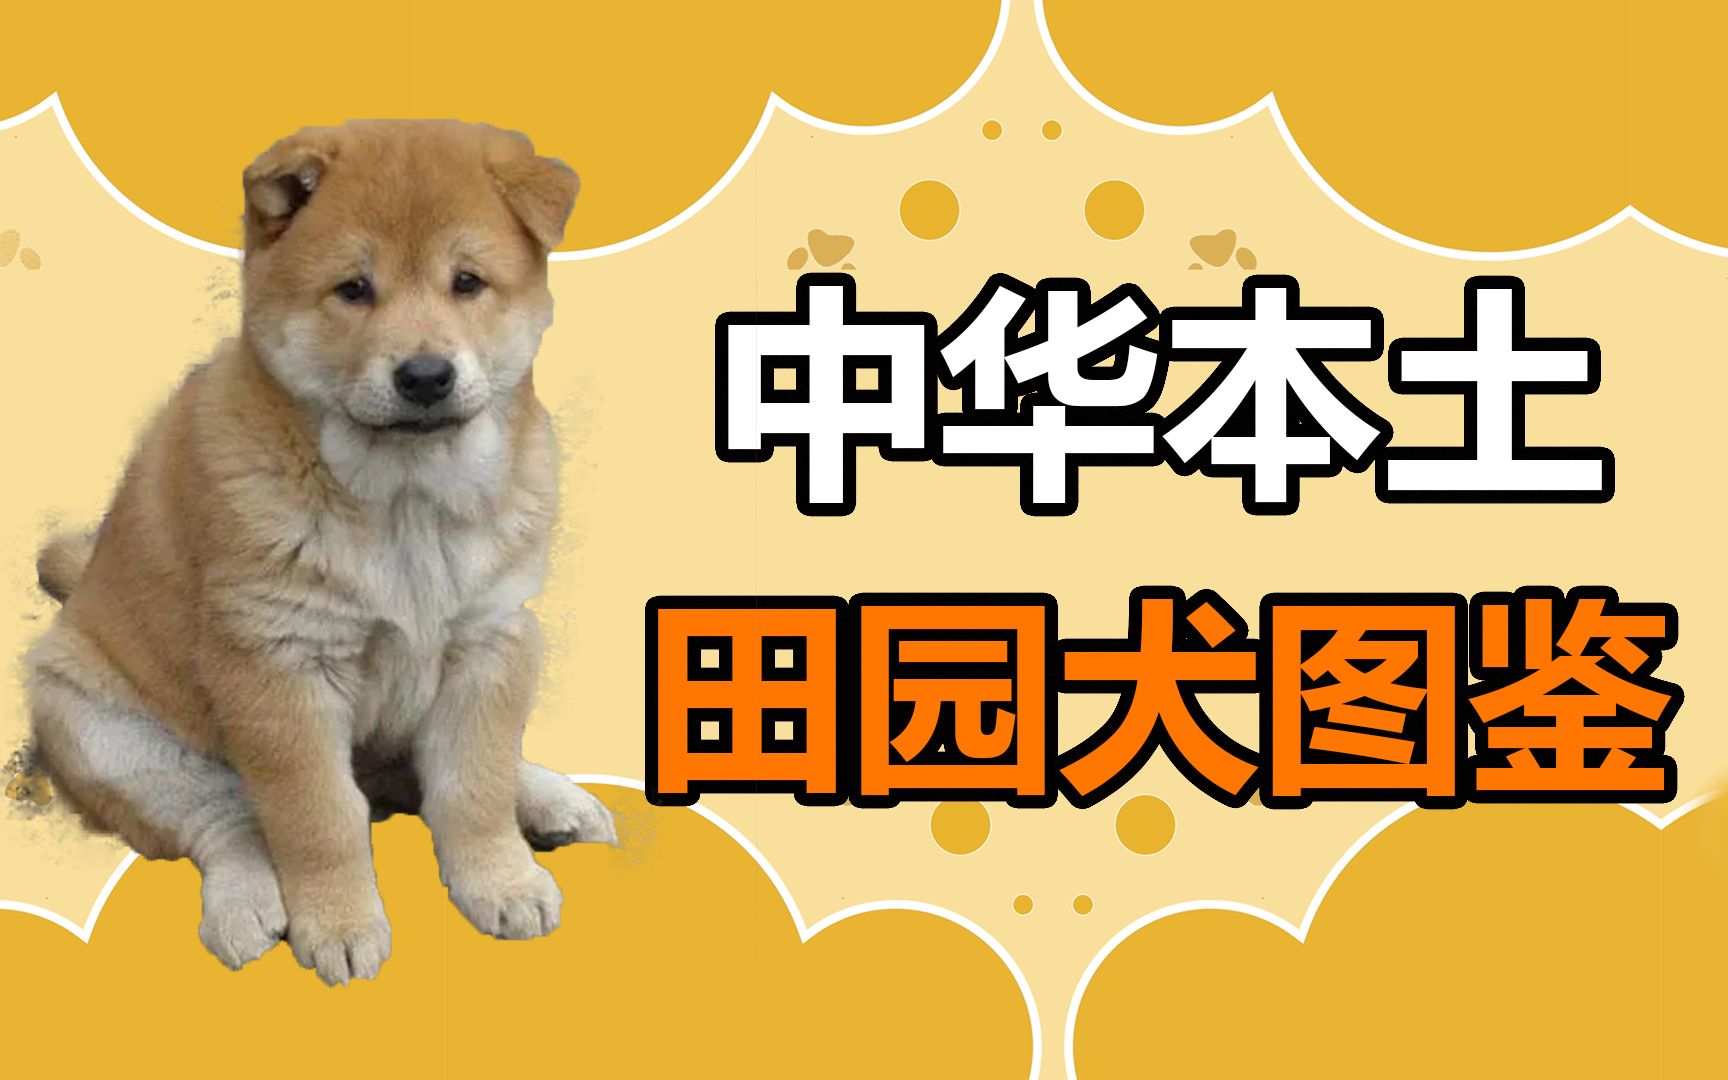 本土名犬——“中华田园犬”，它的优点，众人点赞 - 知乎